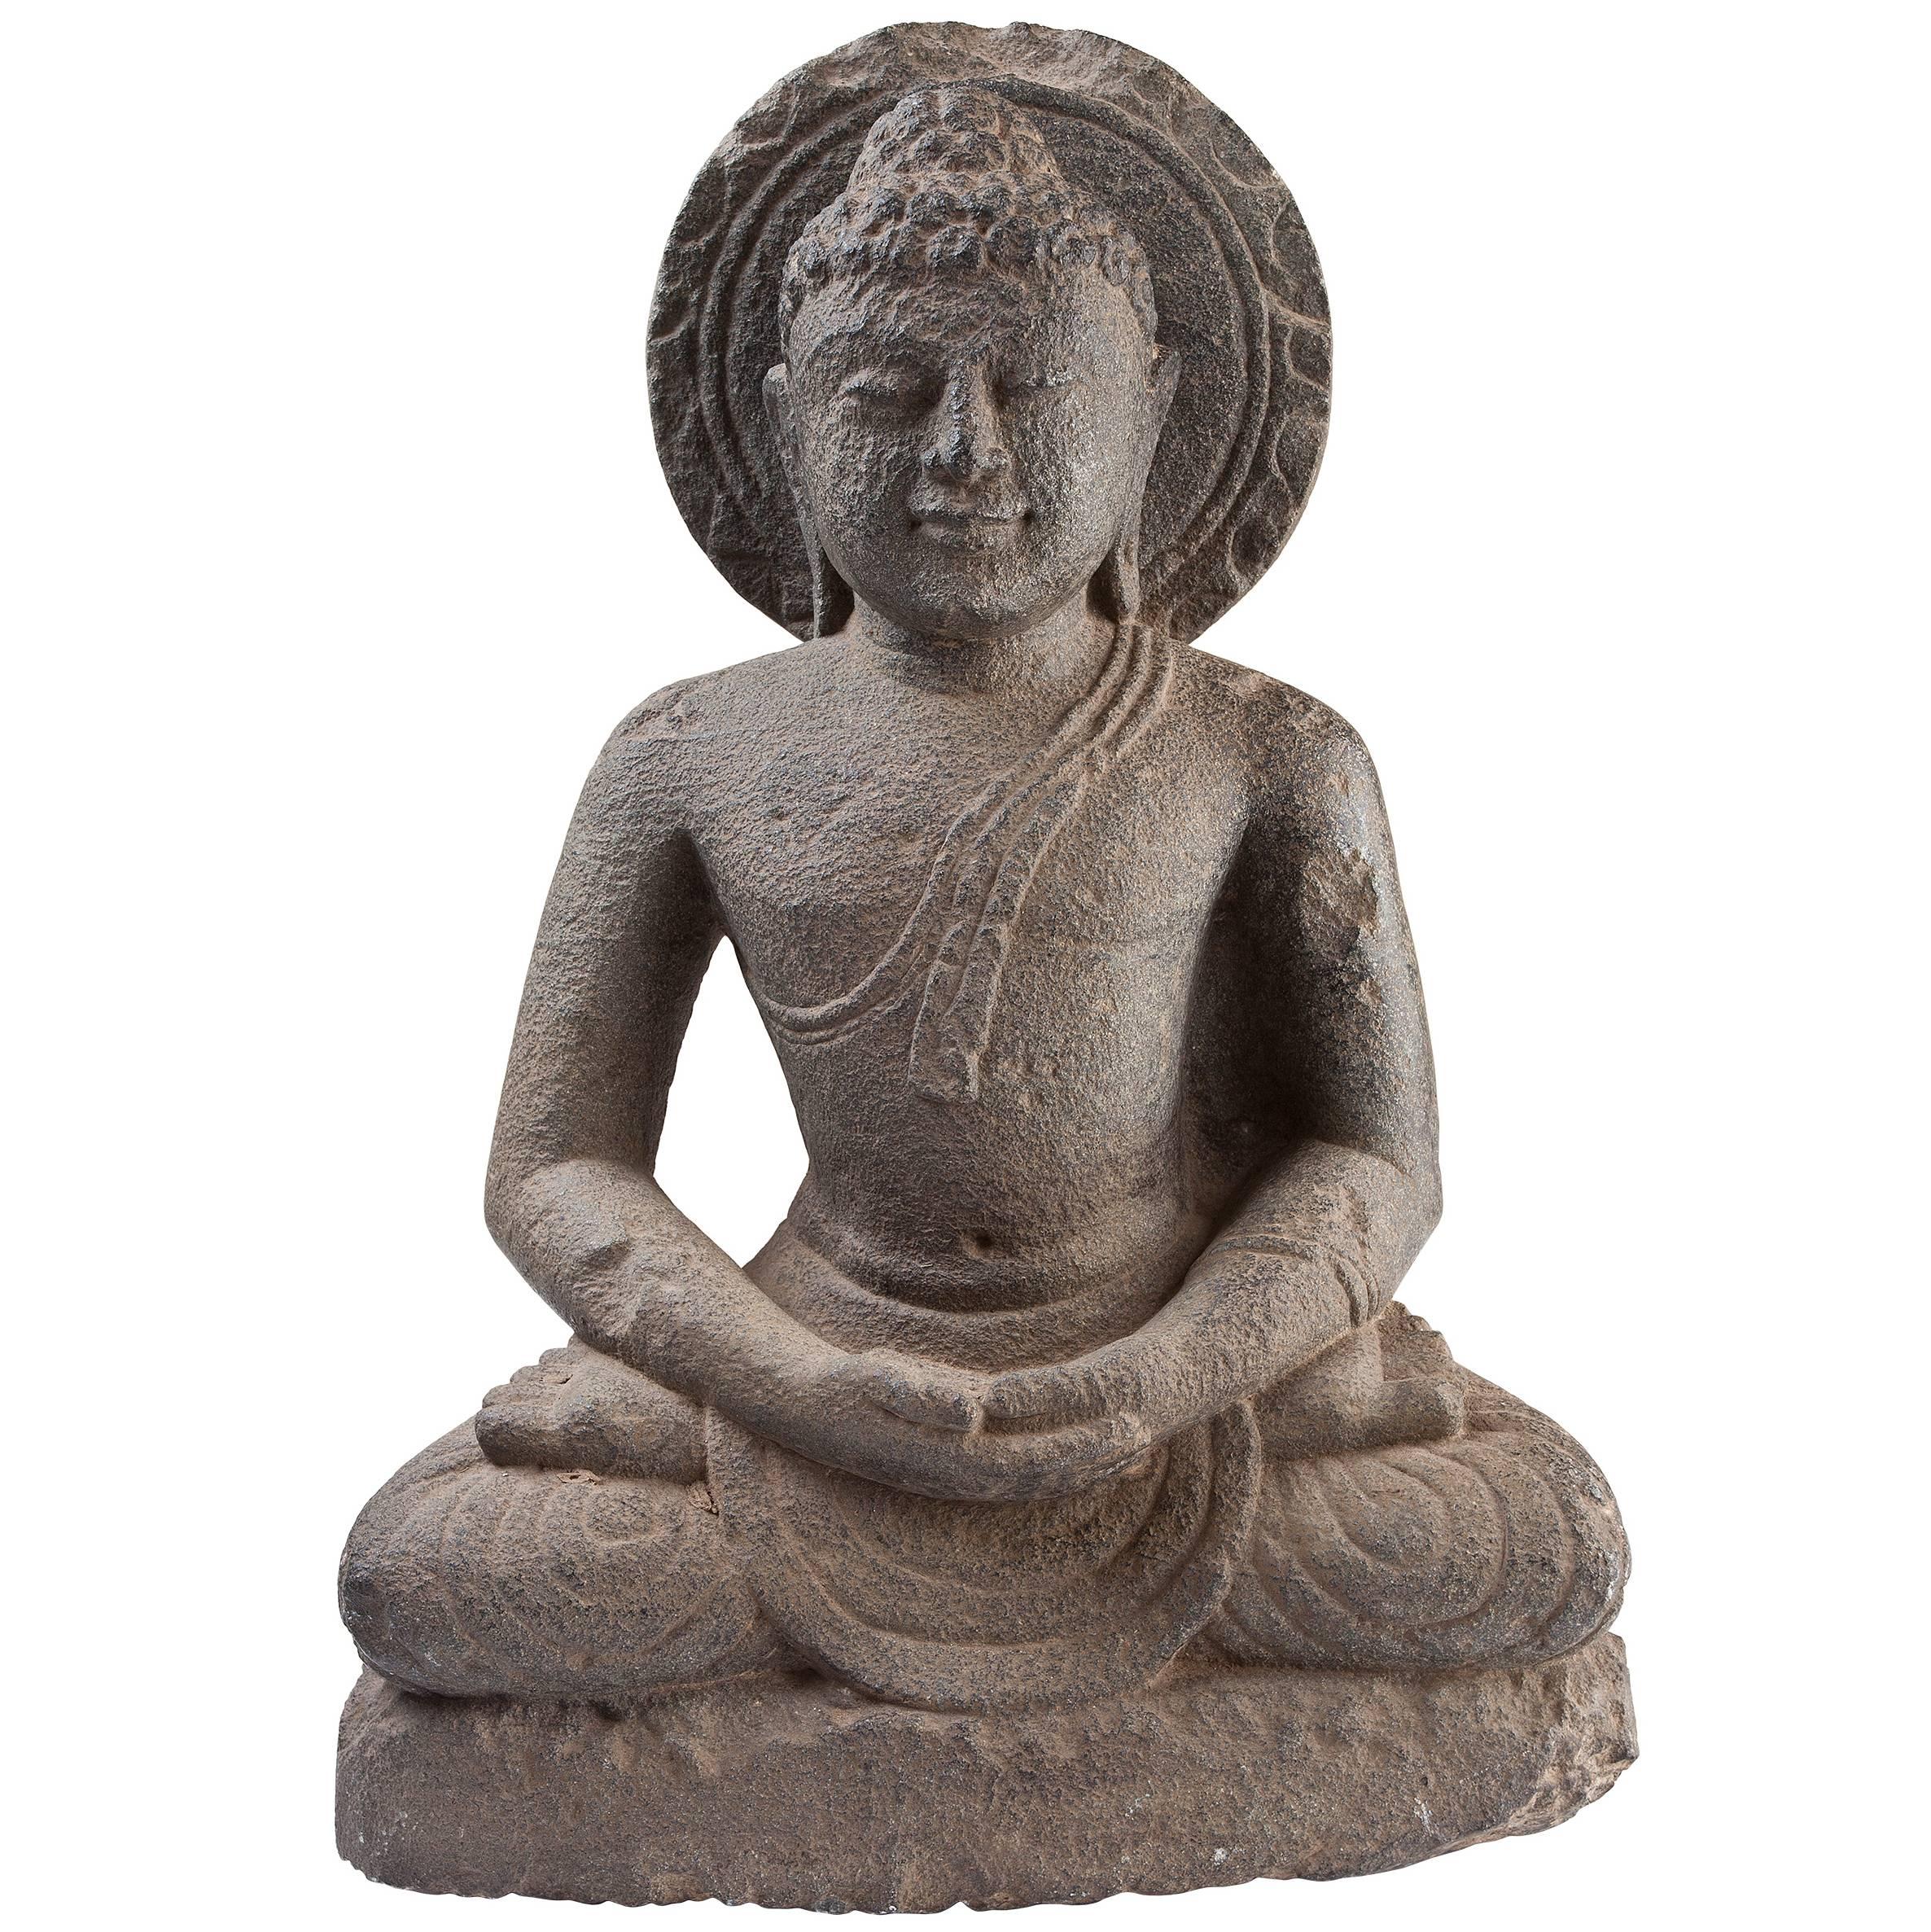 19th Century Granite Buddha in Meditation 'Dhyana' Mudra